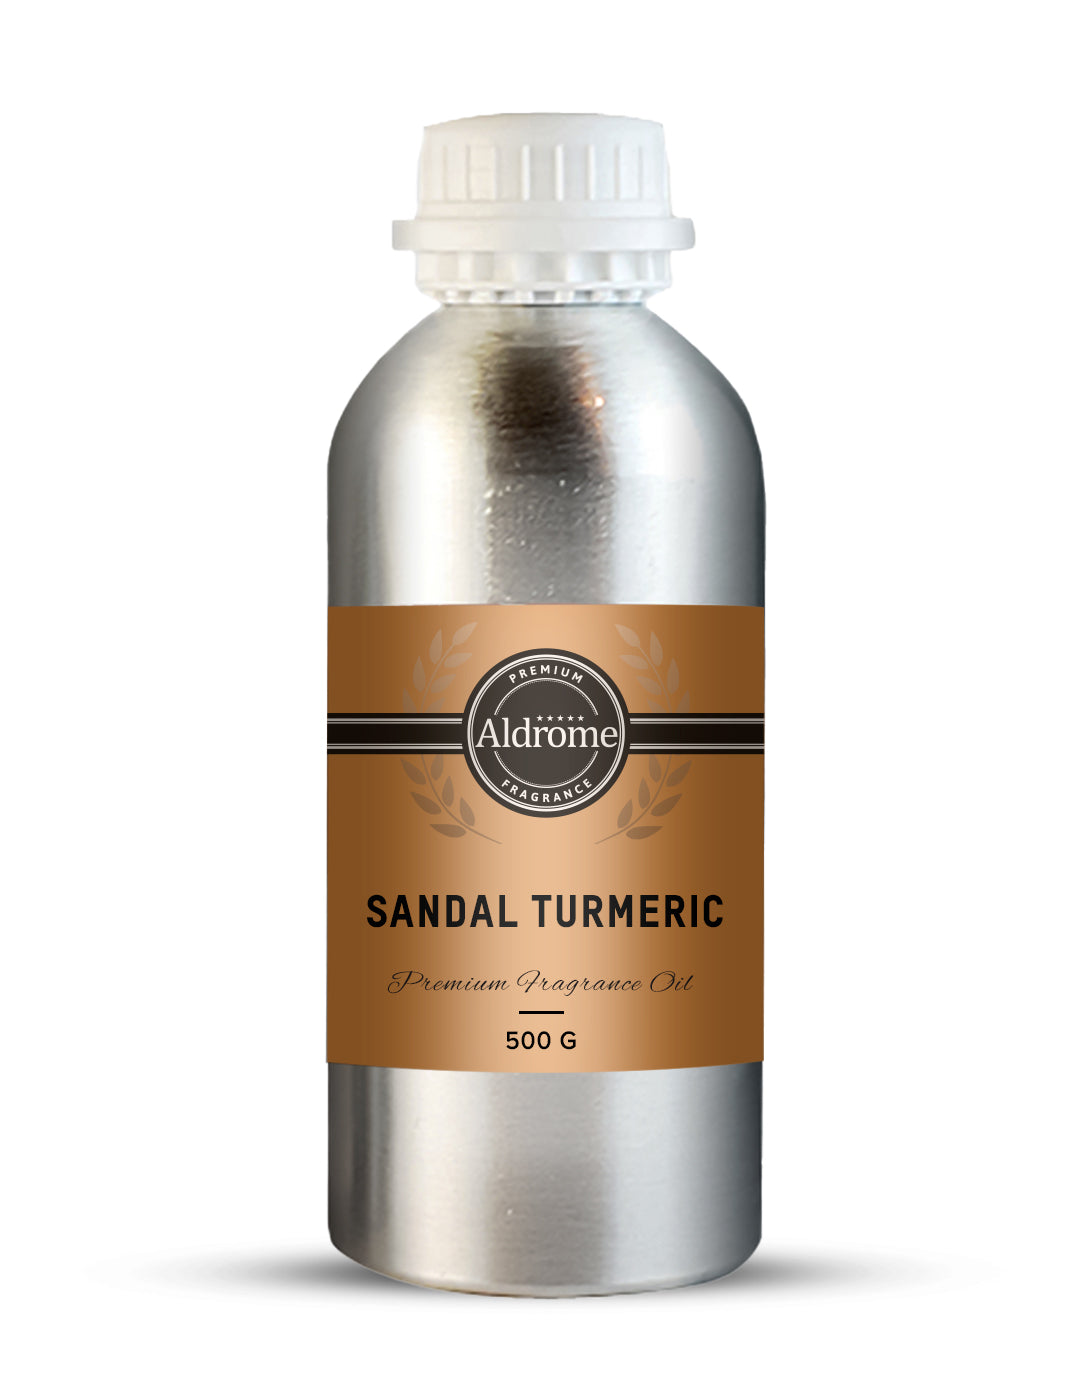 Sandal Turmeric Fragrance Oil - 500 G | Buy Sandal Turmeric Fragrance Oils Online at Best Prices